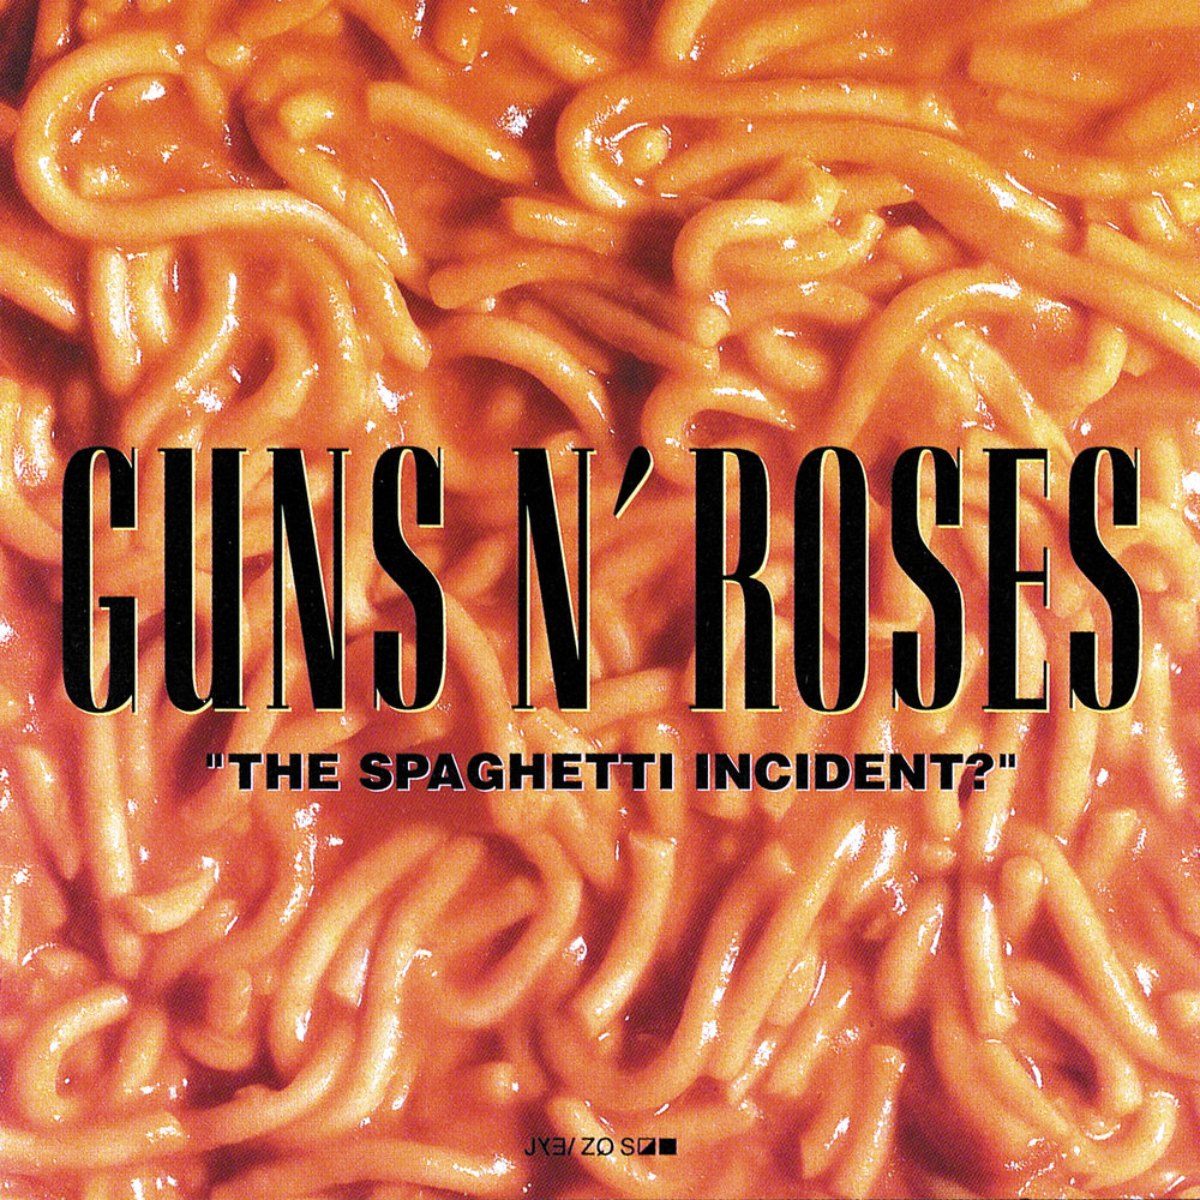 Couverture de l'album "The Spaghetti Incident ?" par Guns N' Roses